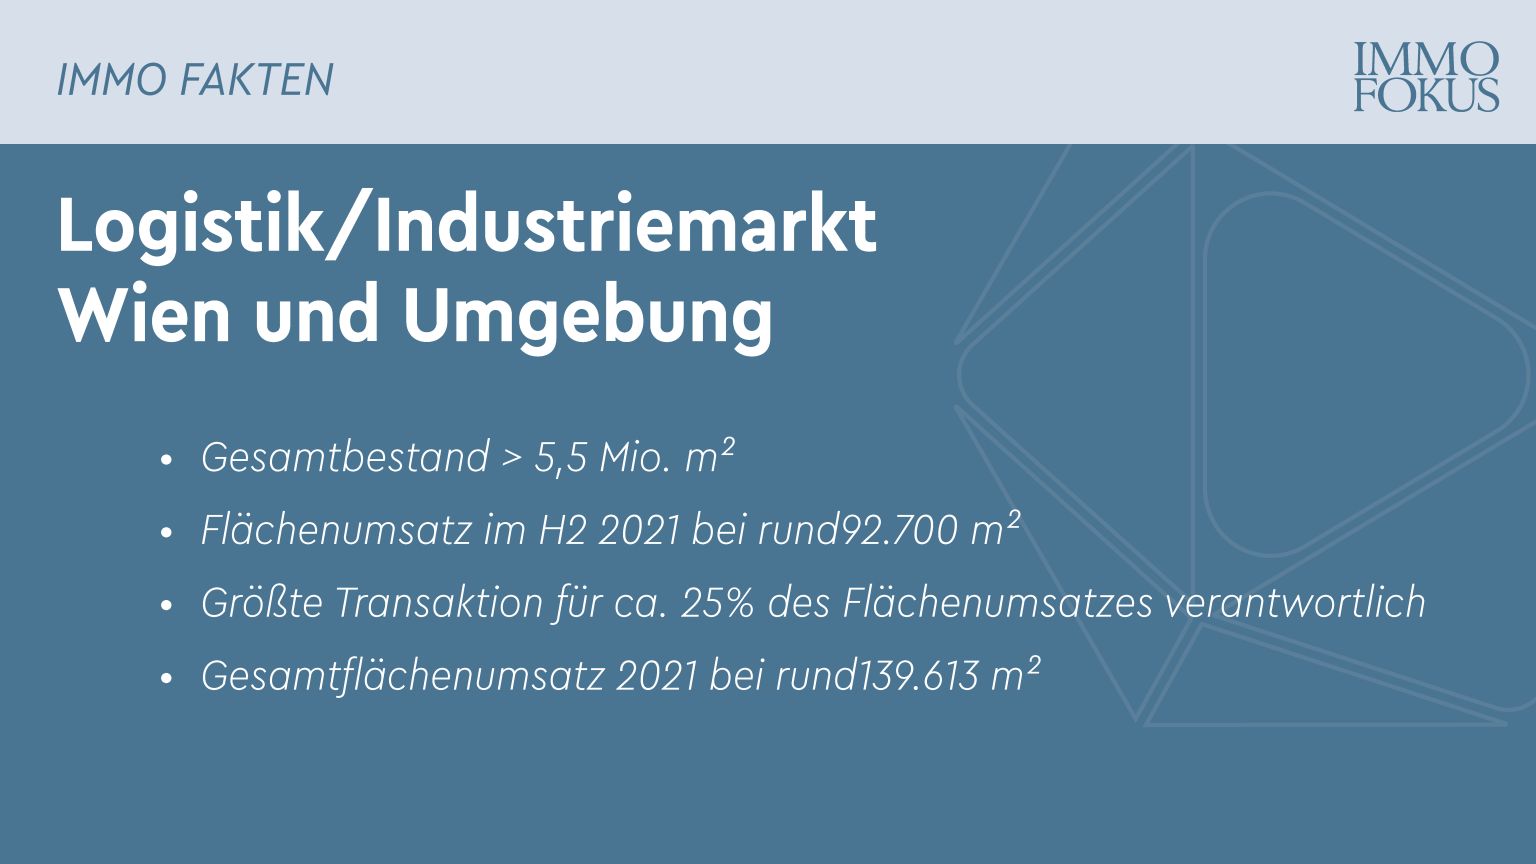 Logistik/Industriemarkt Wien und Umgebung